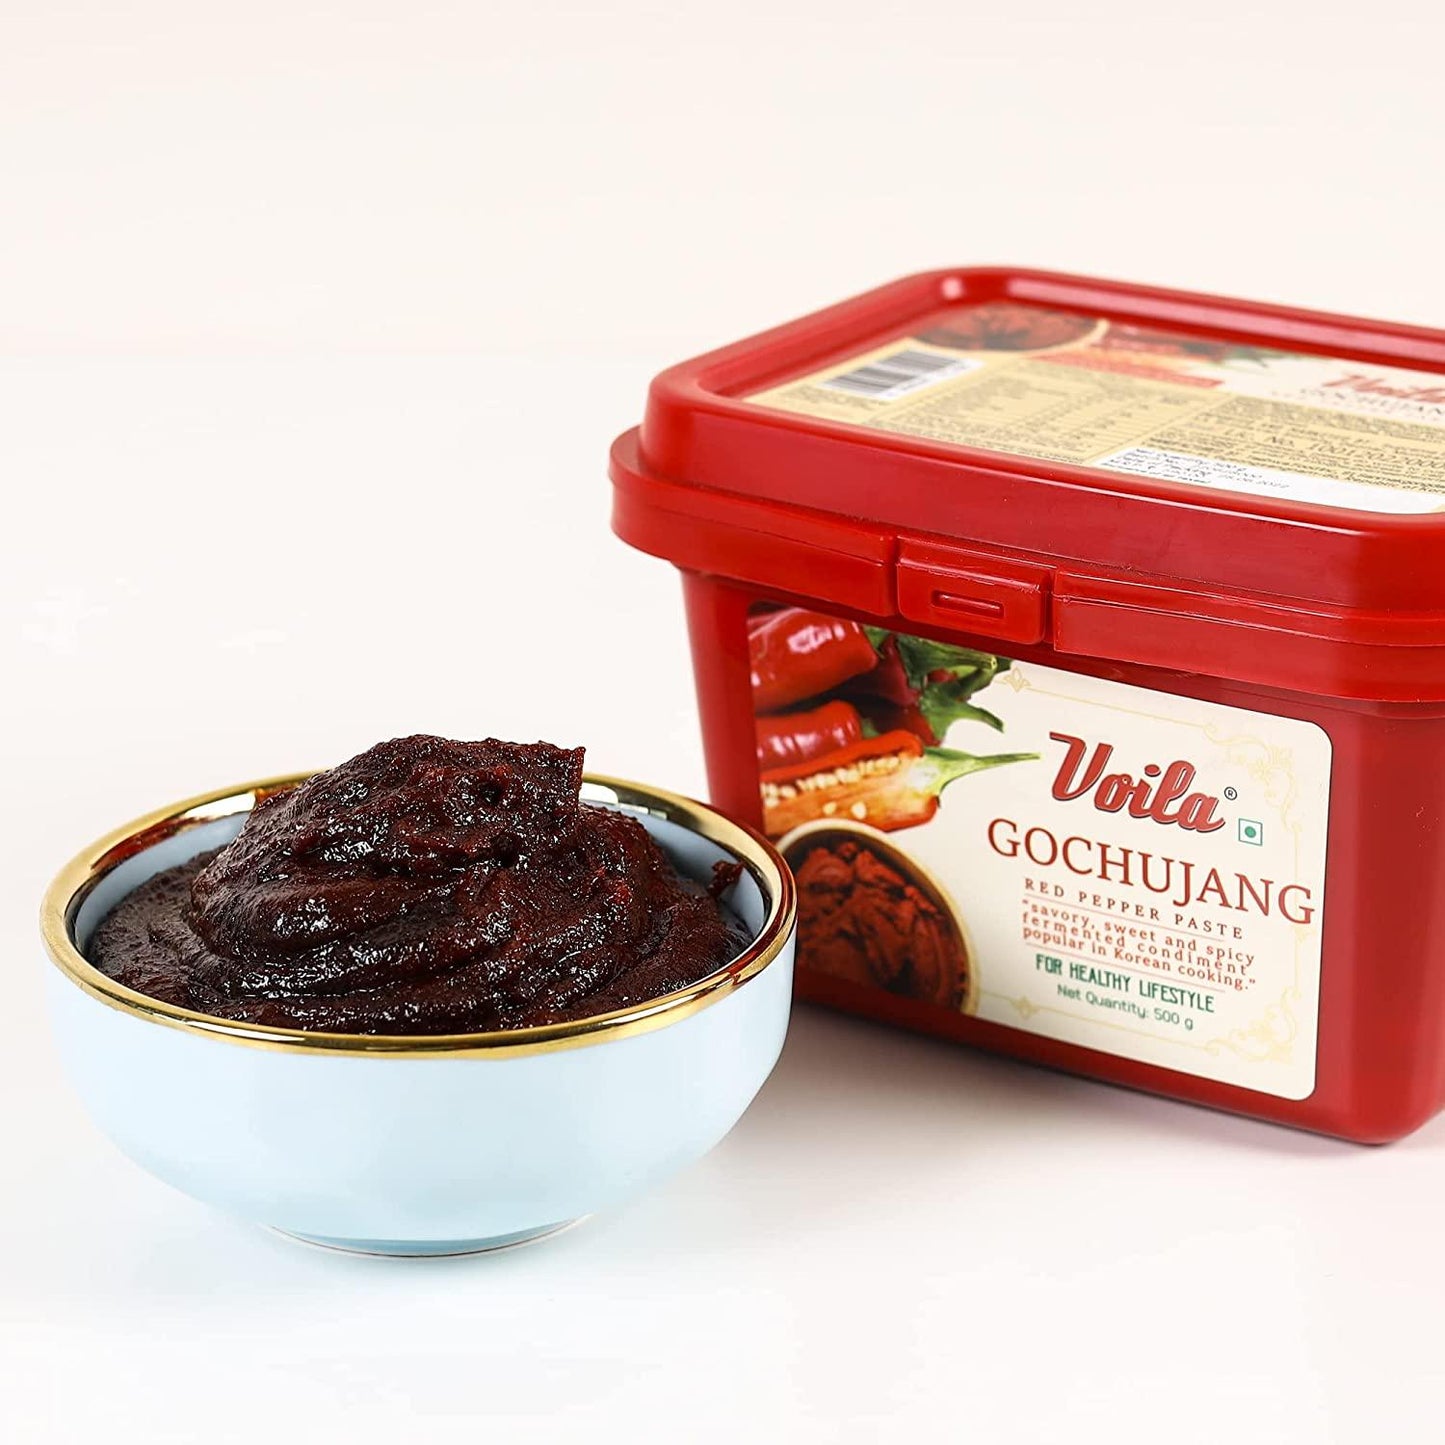 Voila Korean Chilli Paste Gochujang 500g - reddotgreendot